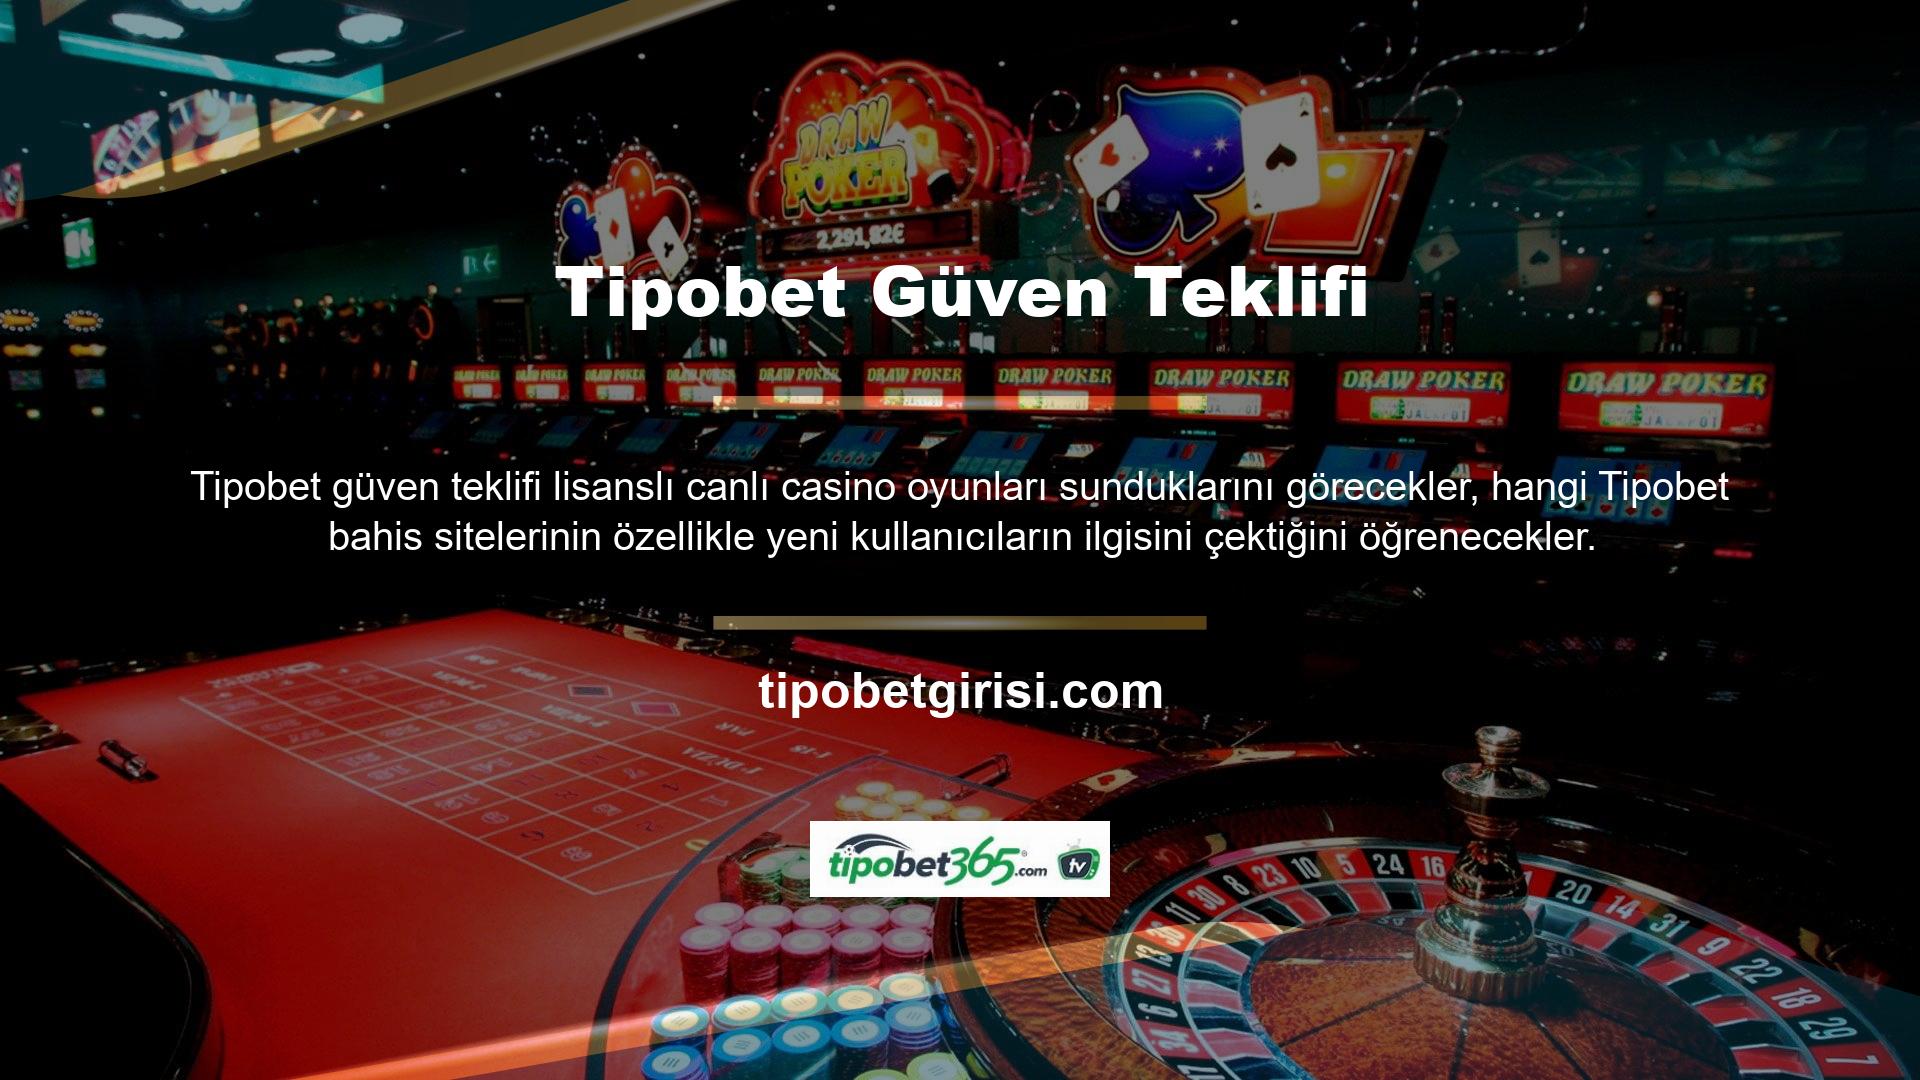 Üstelik bahis piyasasındaki birçok casino bahisçisinin aksine Tipobet en güvenilir ve kaliteli firmalarla çalışmaktadır